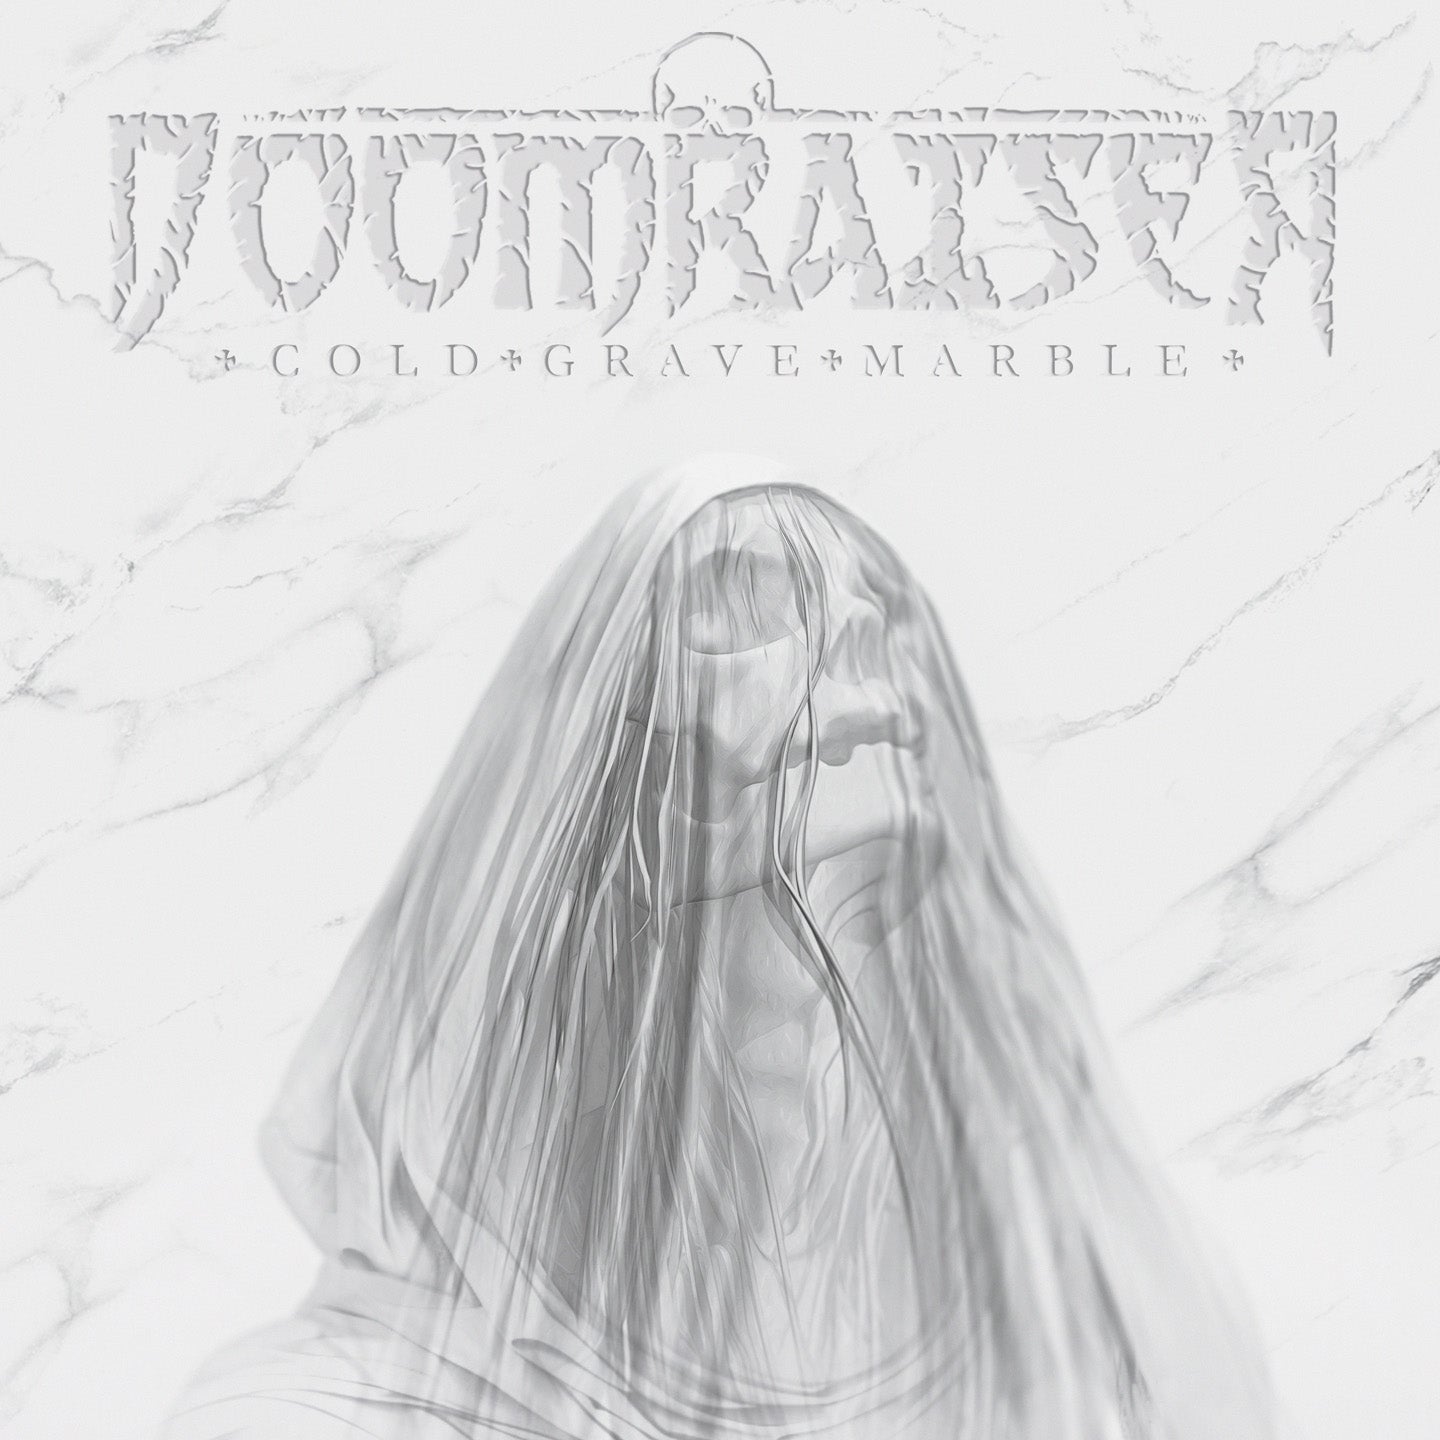 Doomraiser "Cold Grave Marble" digital album